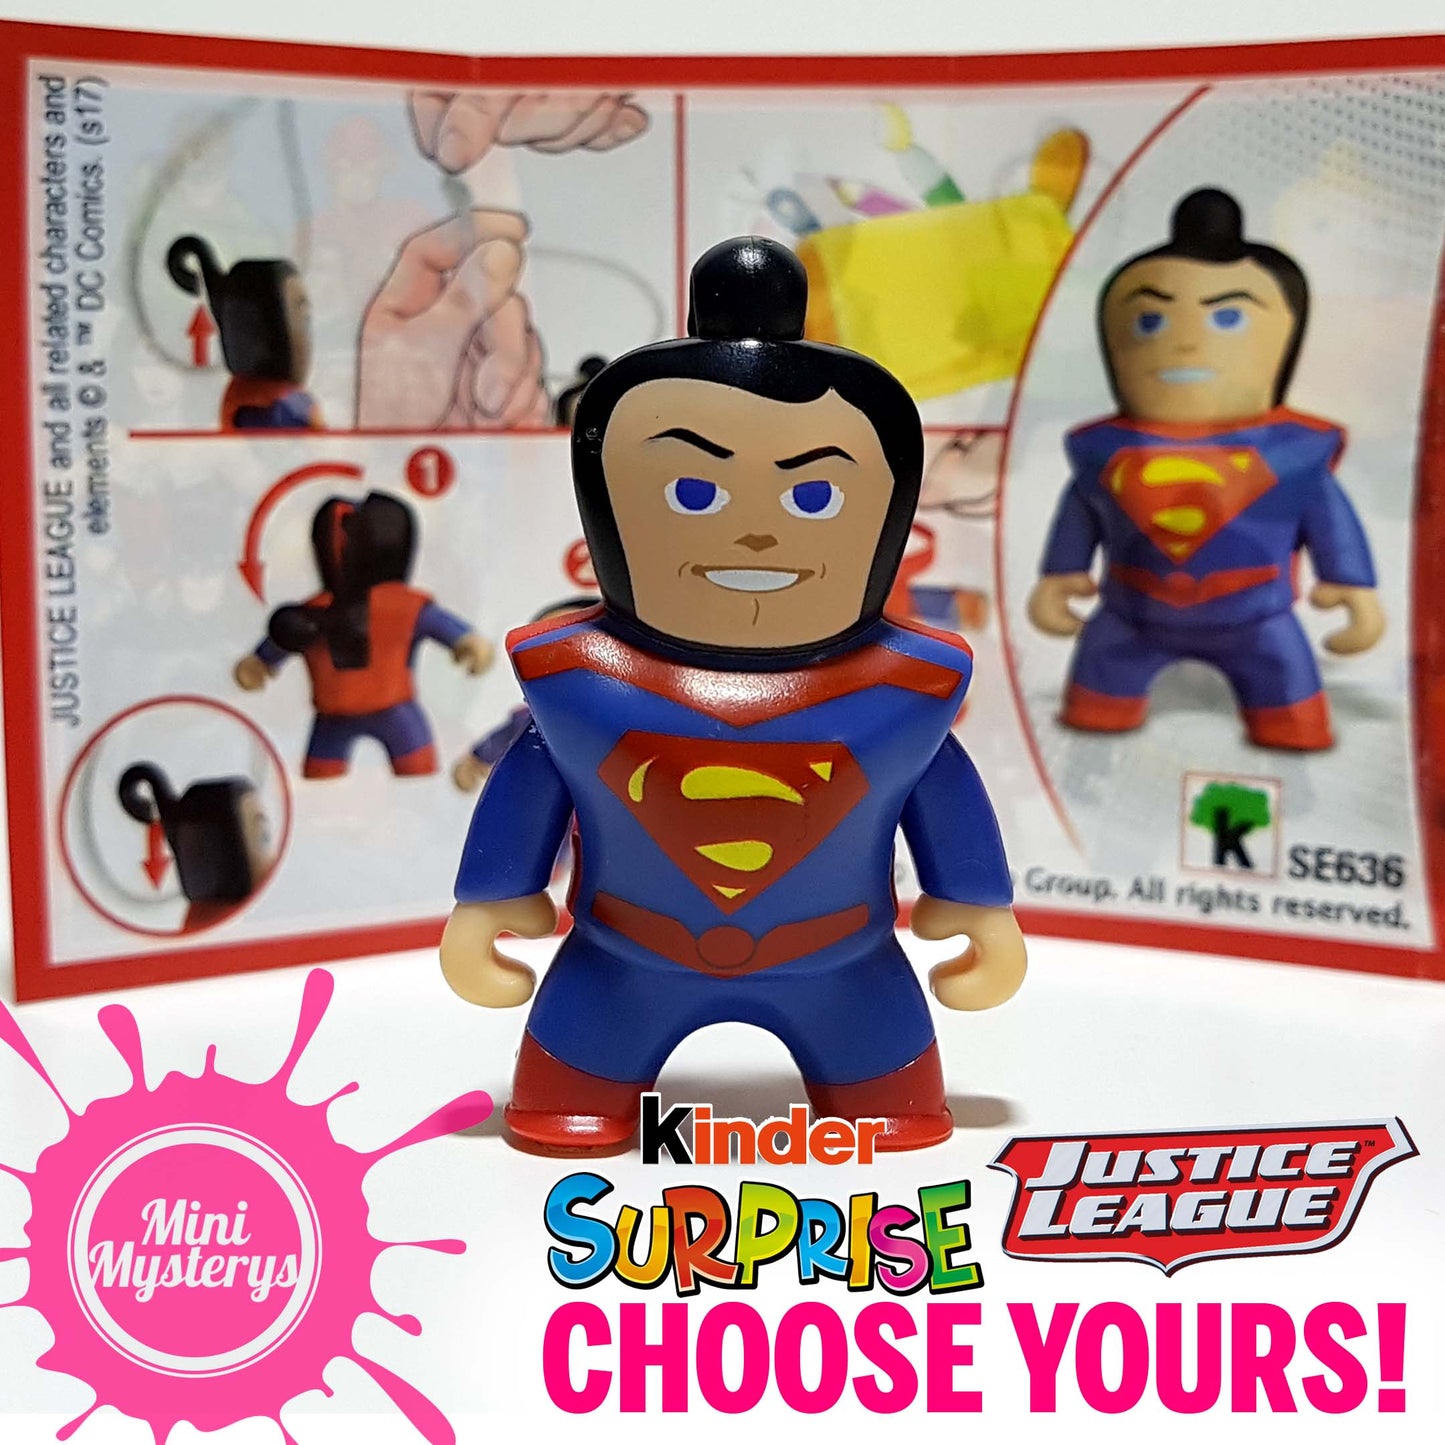 Justice League Kinder Surprise Figures - Choose Yours